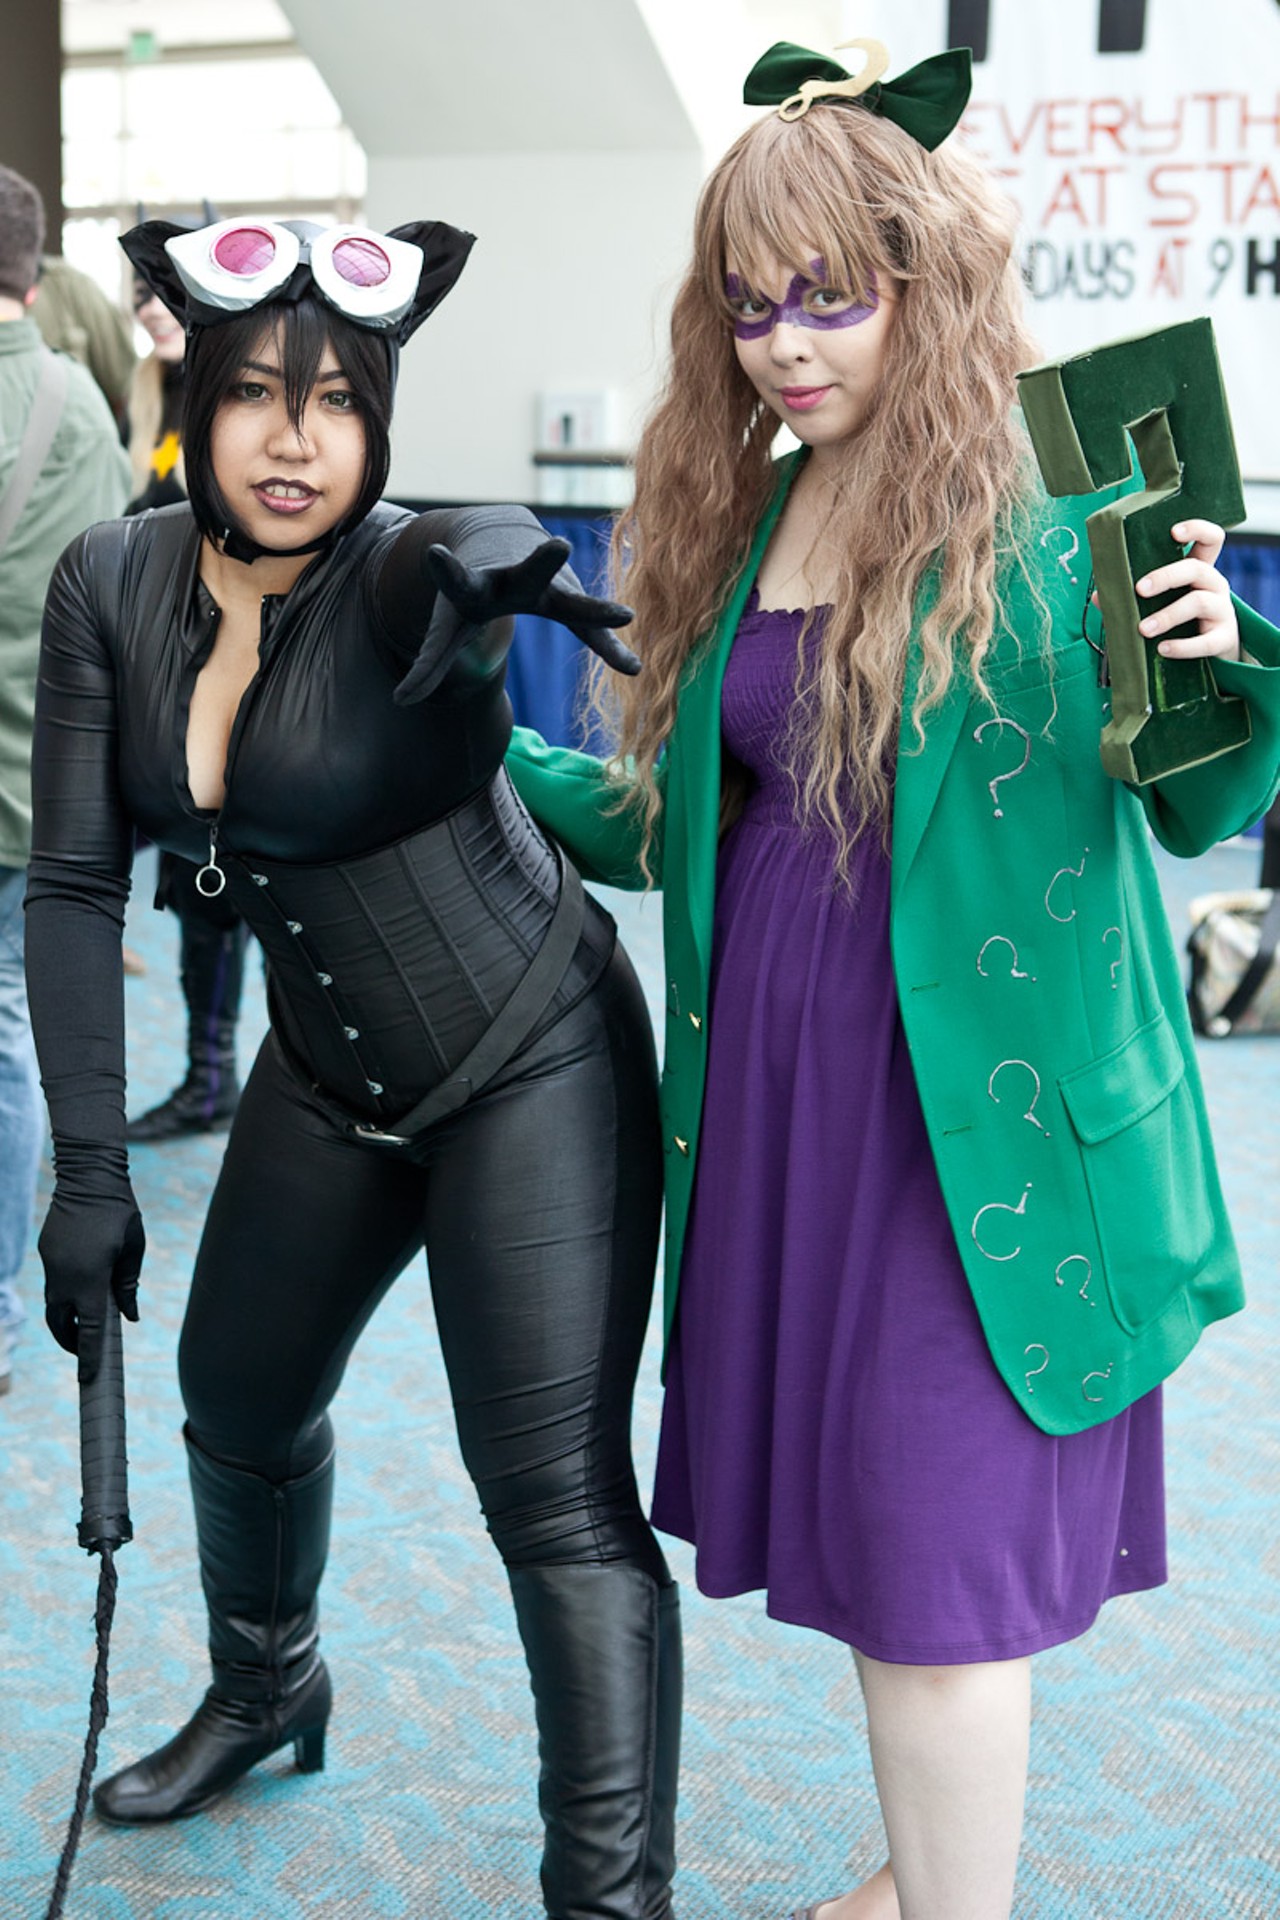 Ladies of Batman at Comic-Con